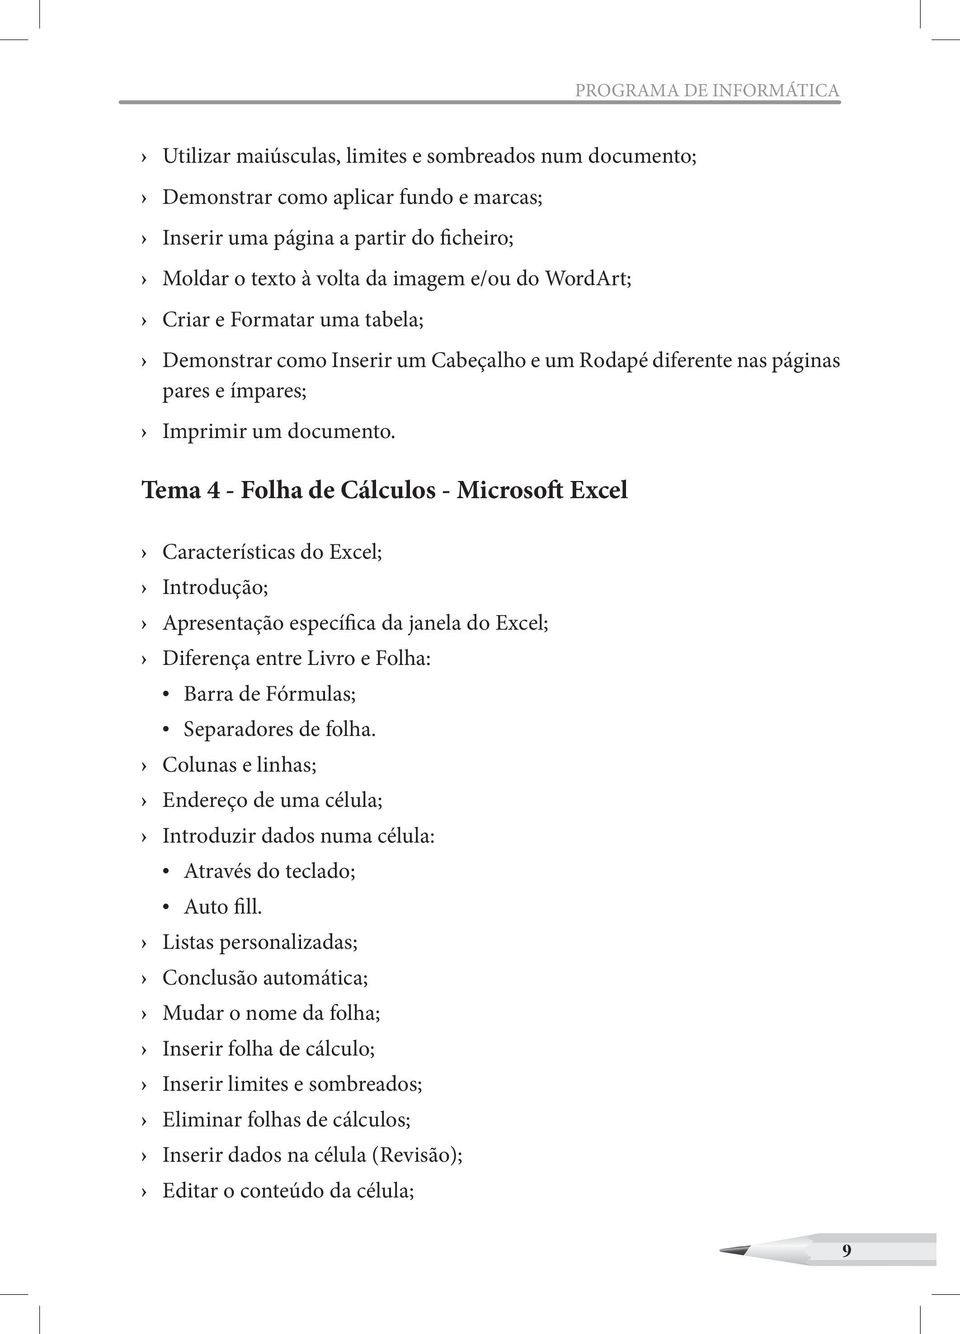 Tema 4 - Folha de Cálculos - Microsoft Excel Características do Excel; Introdução; Apresentação específica da janela do Excel; Diferença entre Livro e Folha: Barra de Fórmulas; Separadores de folha.